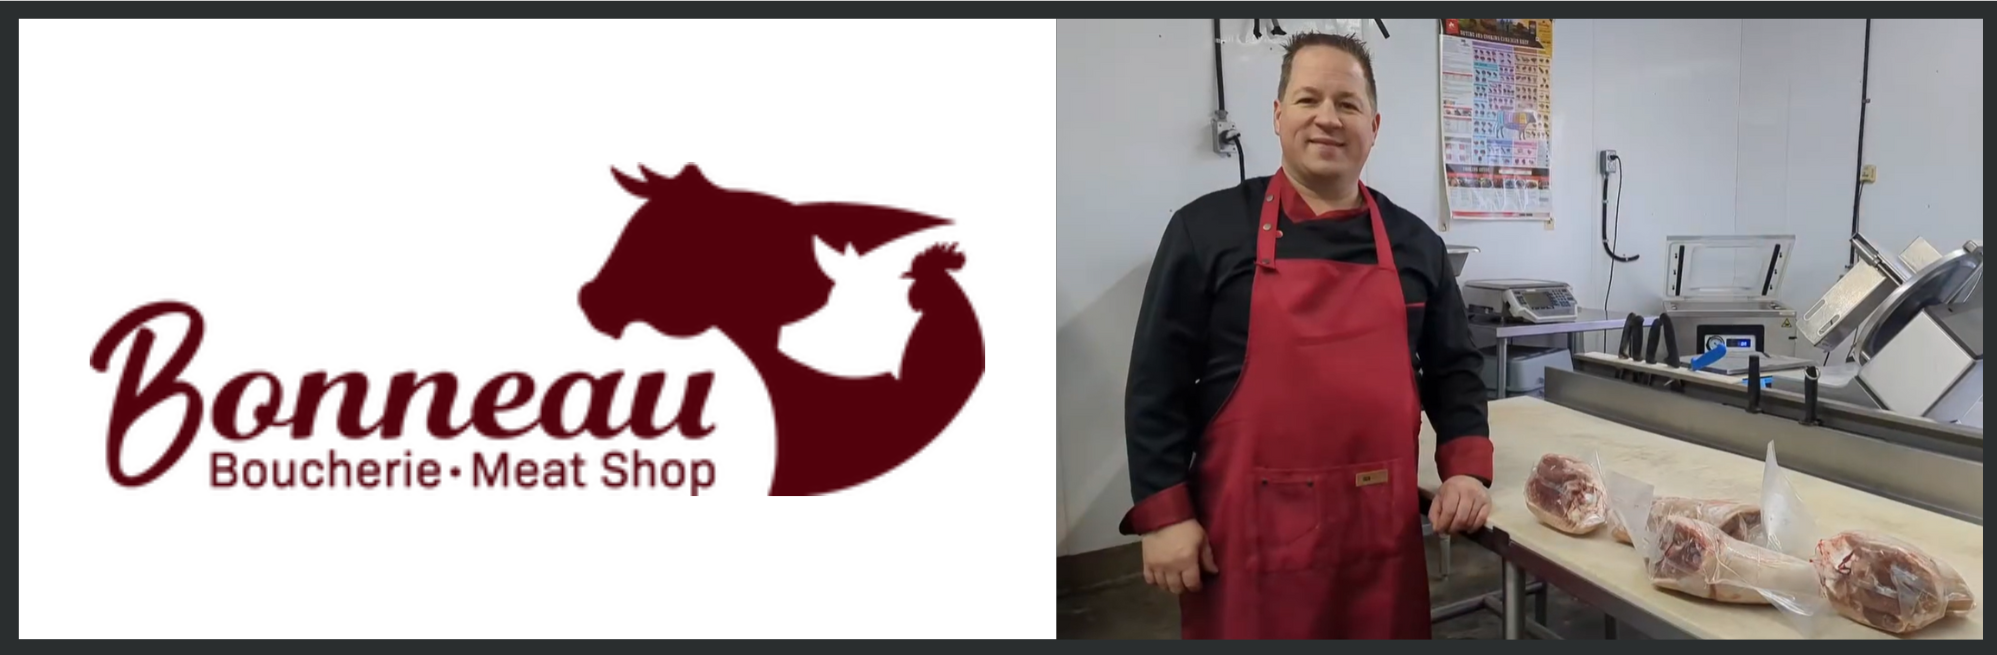 Le logo de la boucherie Bonneau image du propriétaire debout derrière le comptoir démontrant des coupes de viande